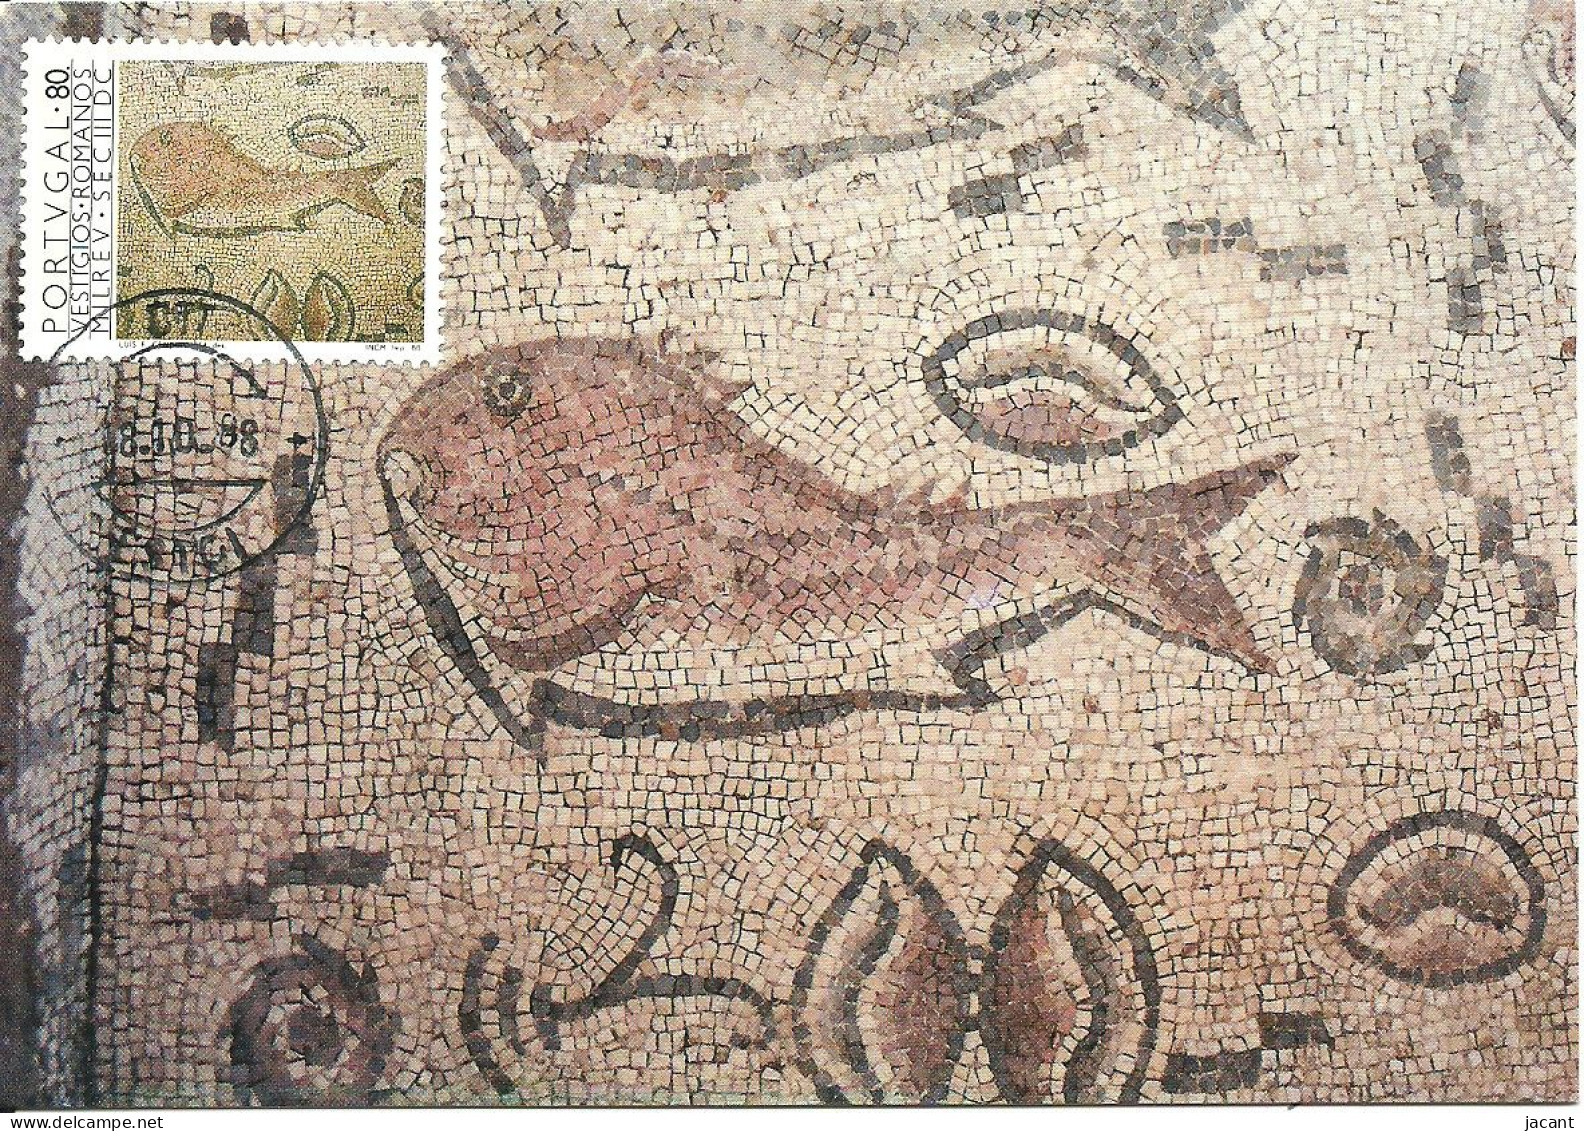 30929 - Carte Maximum - Portugal - Ruinas Romanas Milreu Mosaico Peixe - Mosaique Poisson Fish - Ruines Roman Ruins - Cartes-maximum (CM)